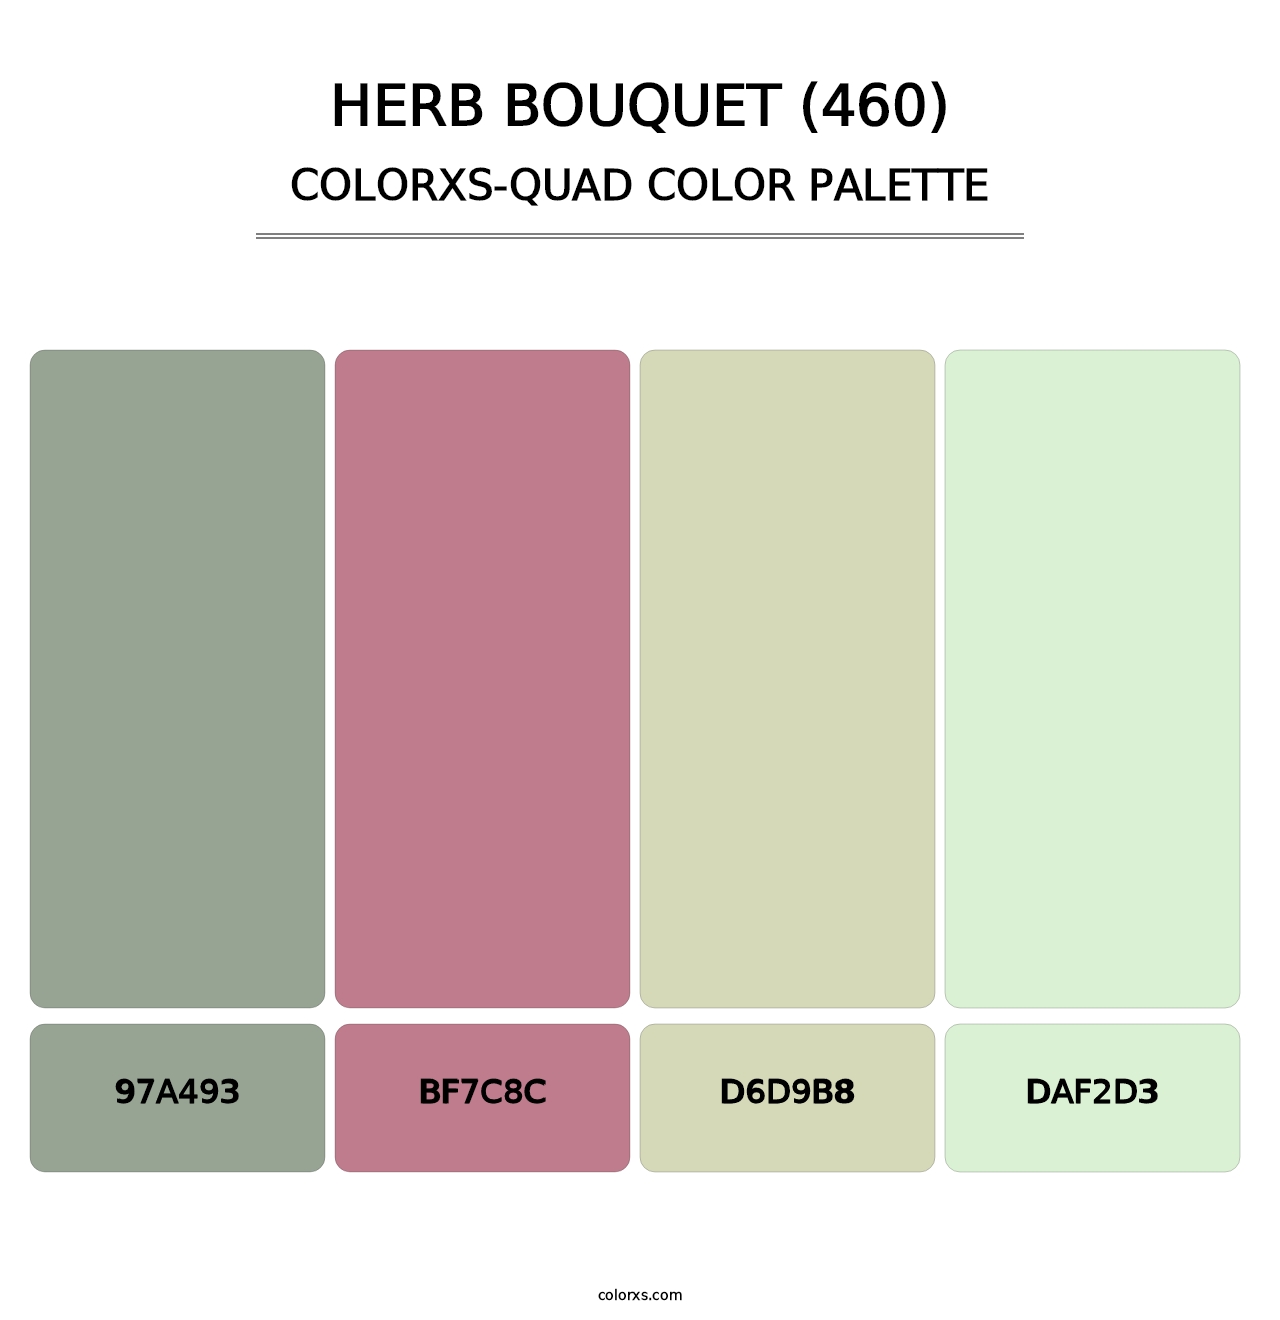 Herb Bouquet (460) - Colorxs Quad Palette